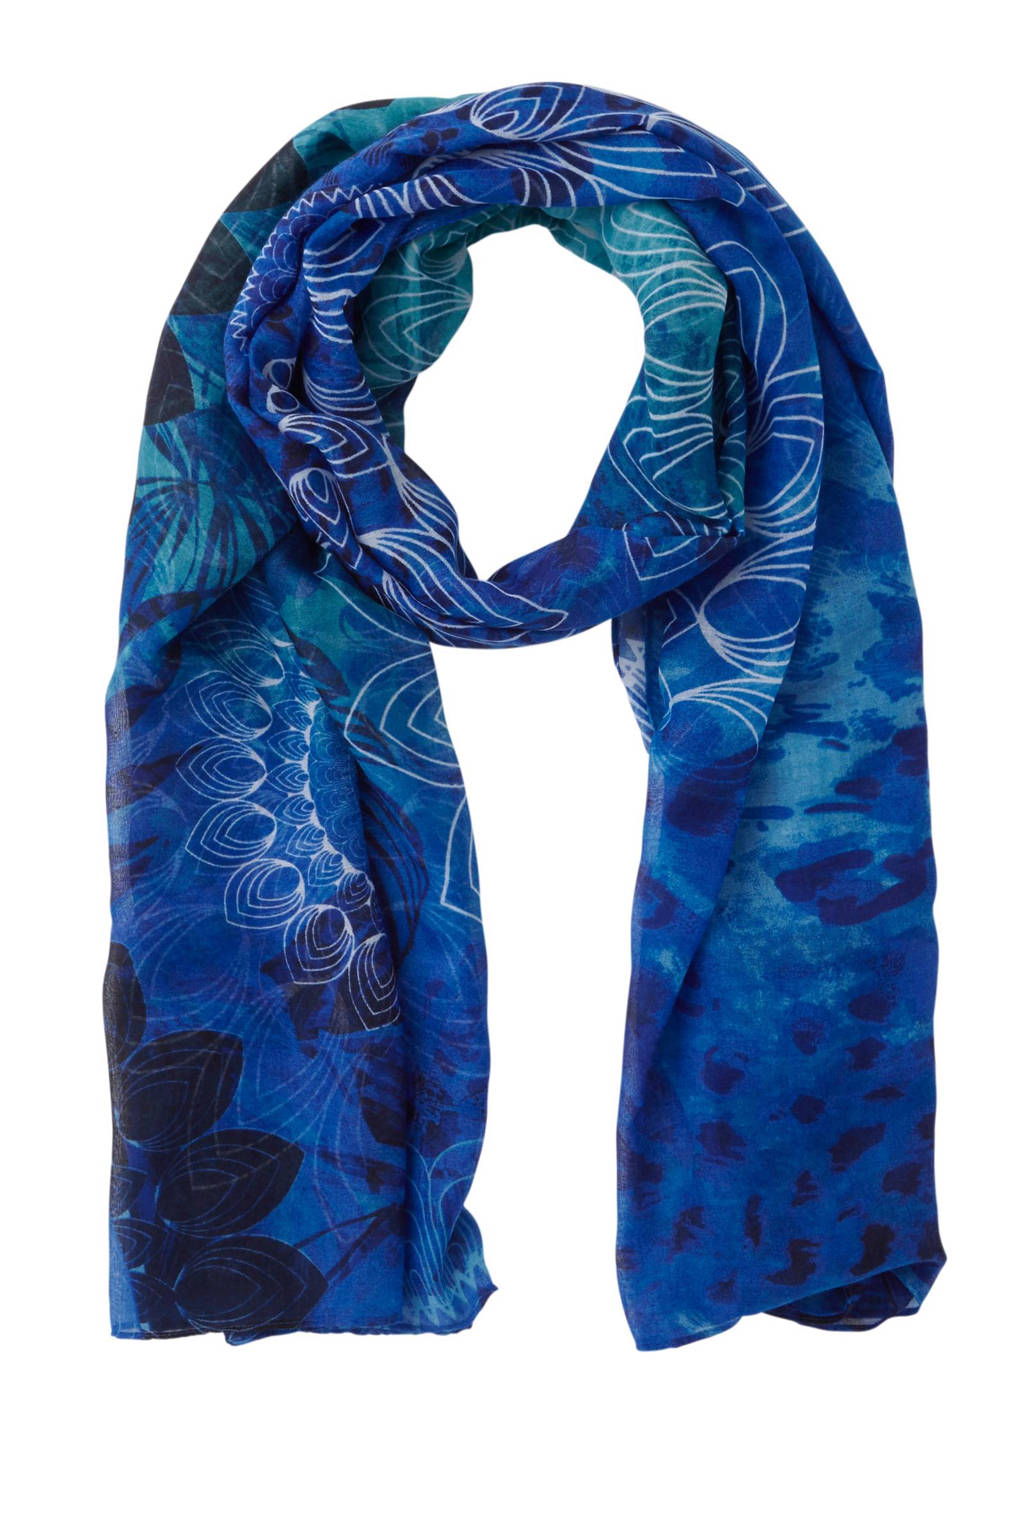 Pijl Beweegt niet Kennis maken Desigual sjaal/pareo met all over print blauw | wehkamp